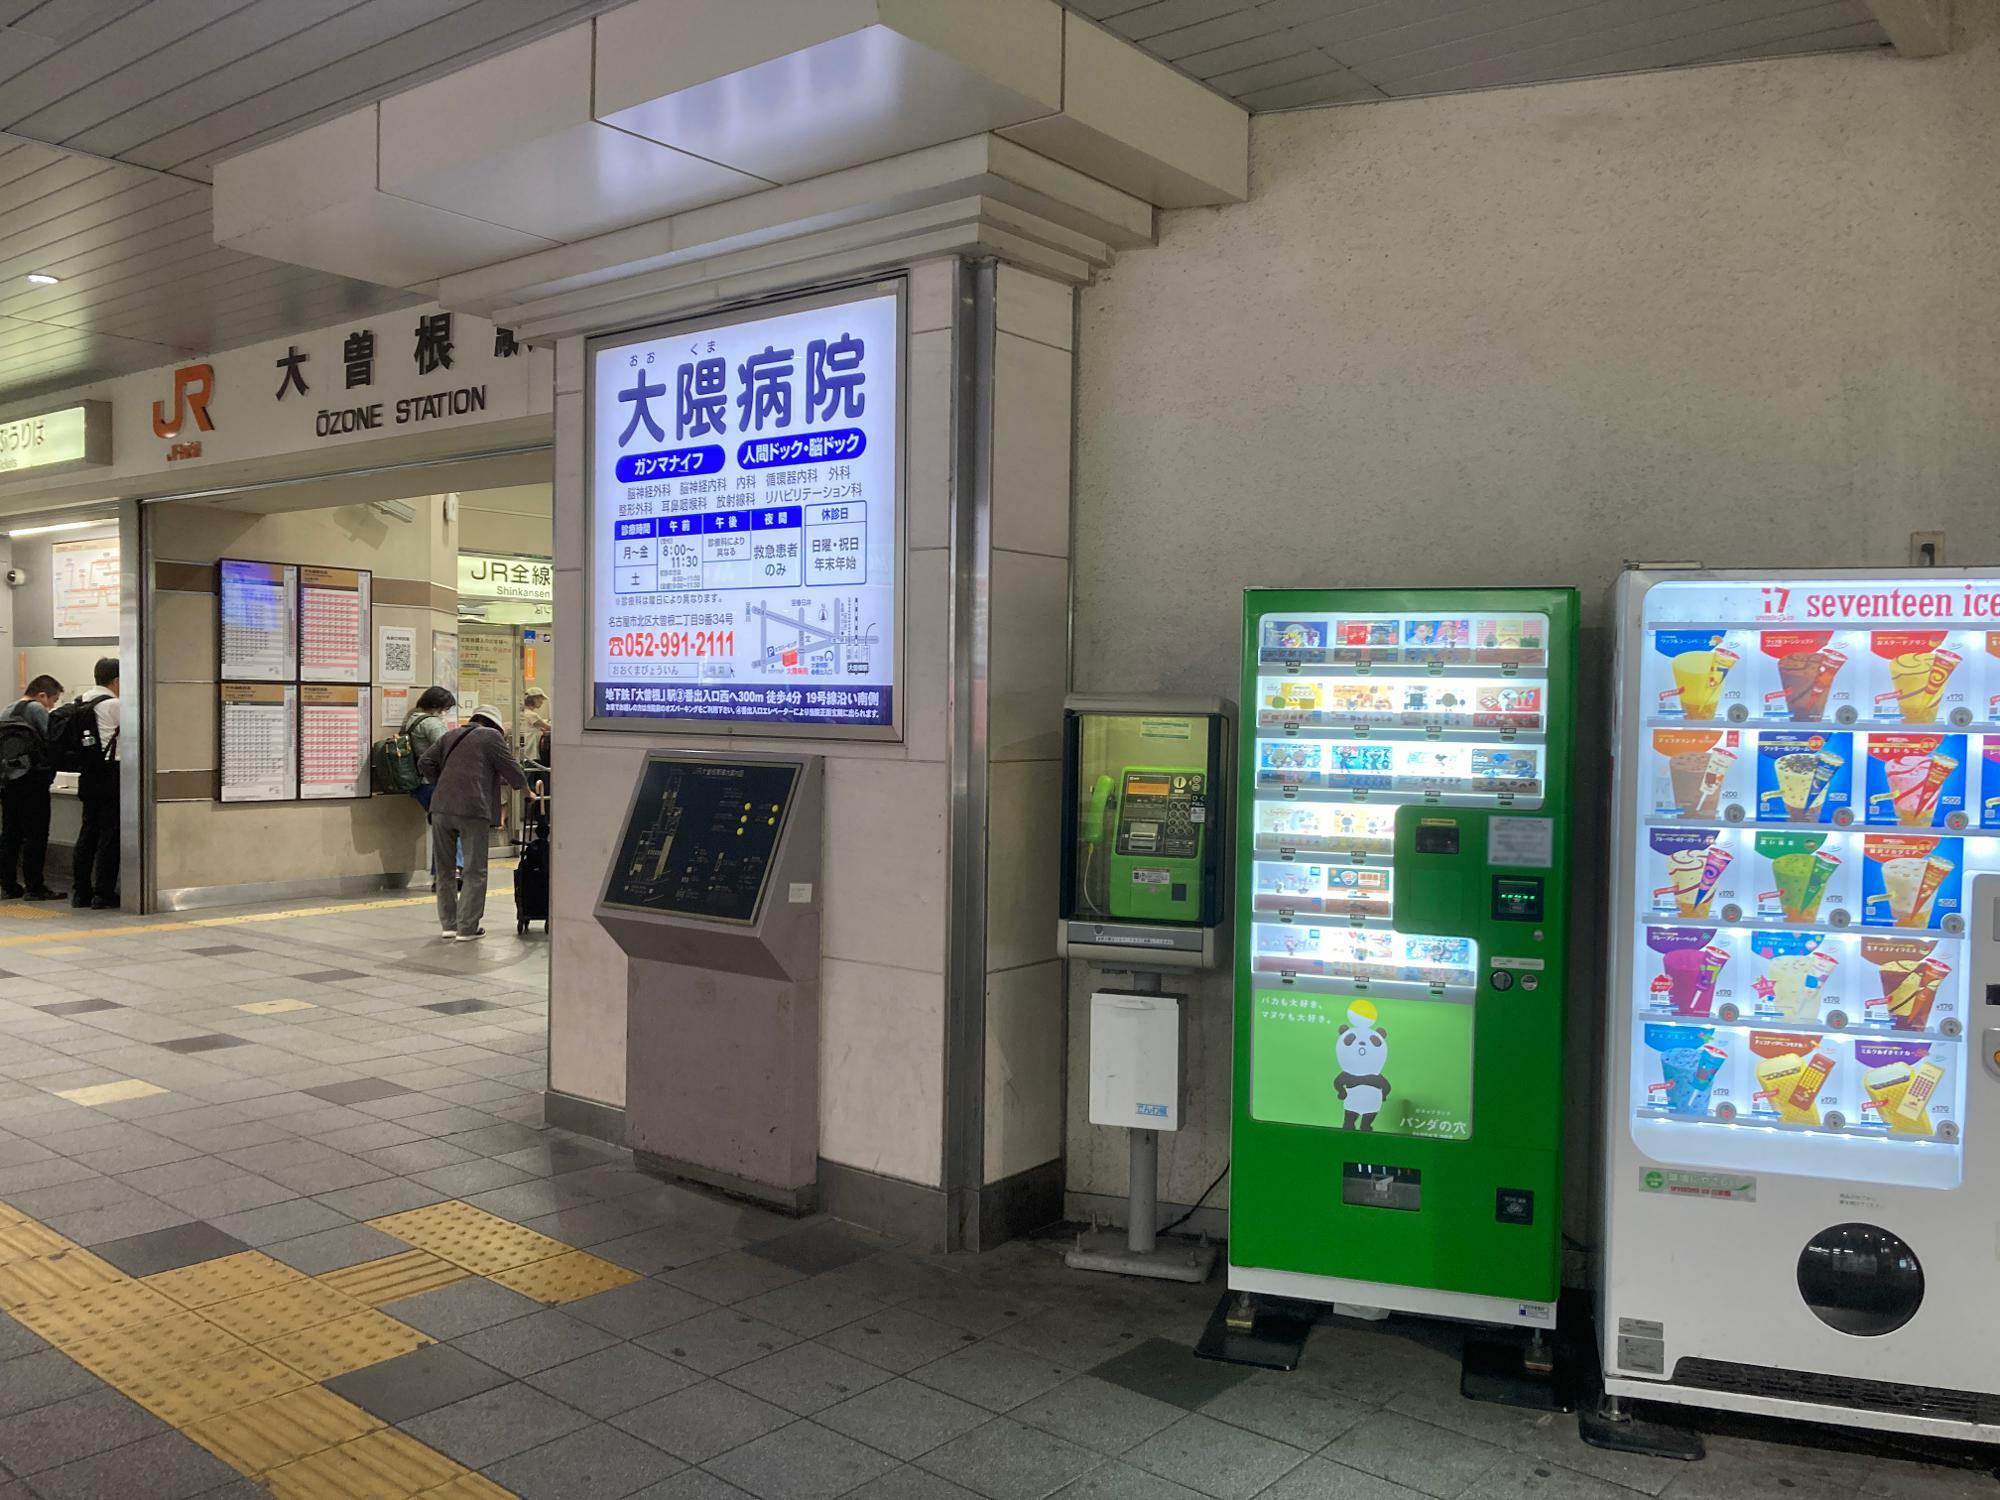 大曽根駅北口改札のすぐとなりの緑色の自動販売機が目印